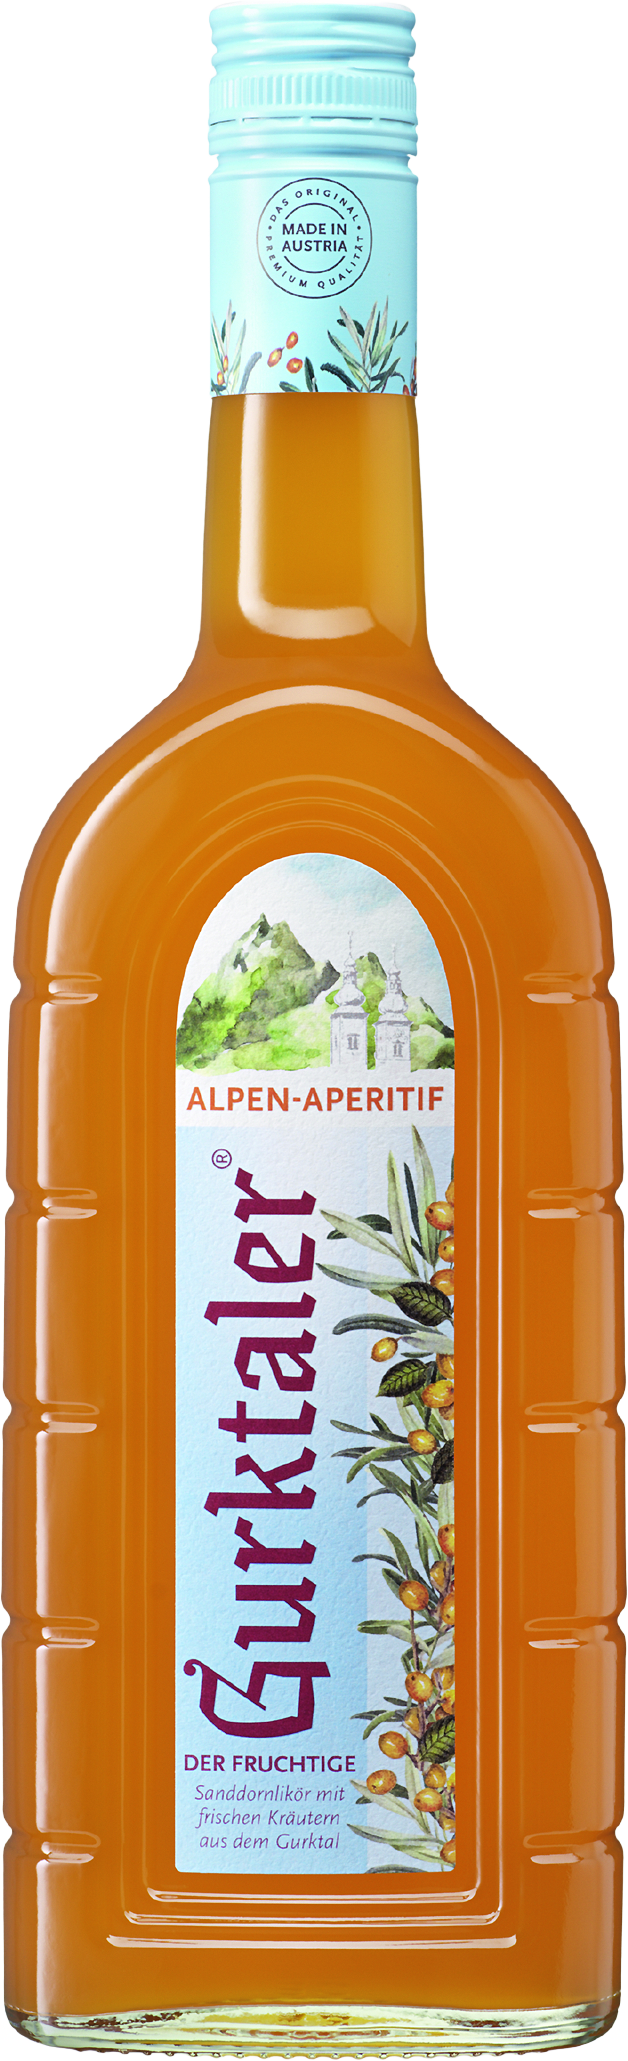 Gurktaler Alpen-Aperitif »Der Fruchtige« Gurktaler Alpenkräuter ...